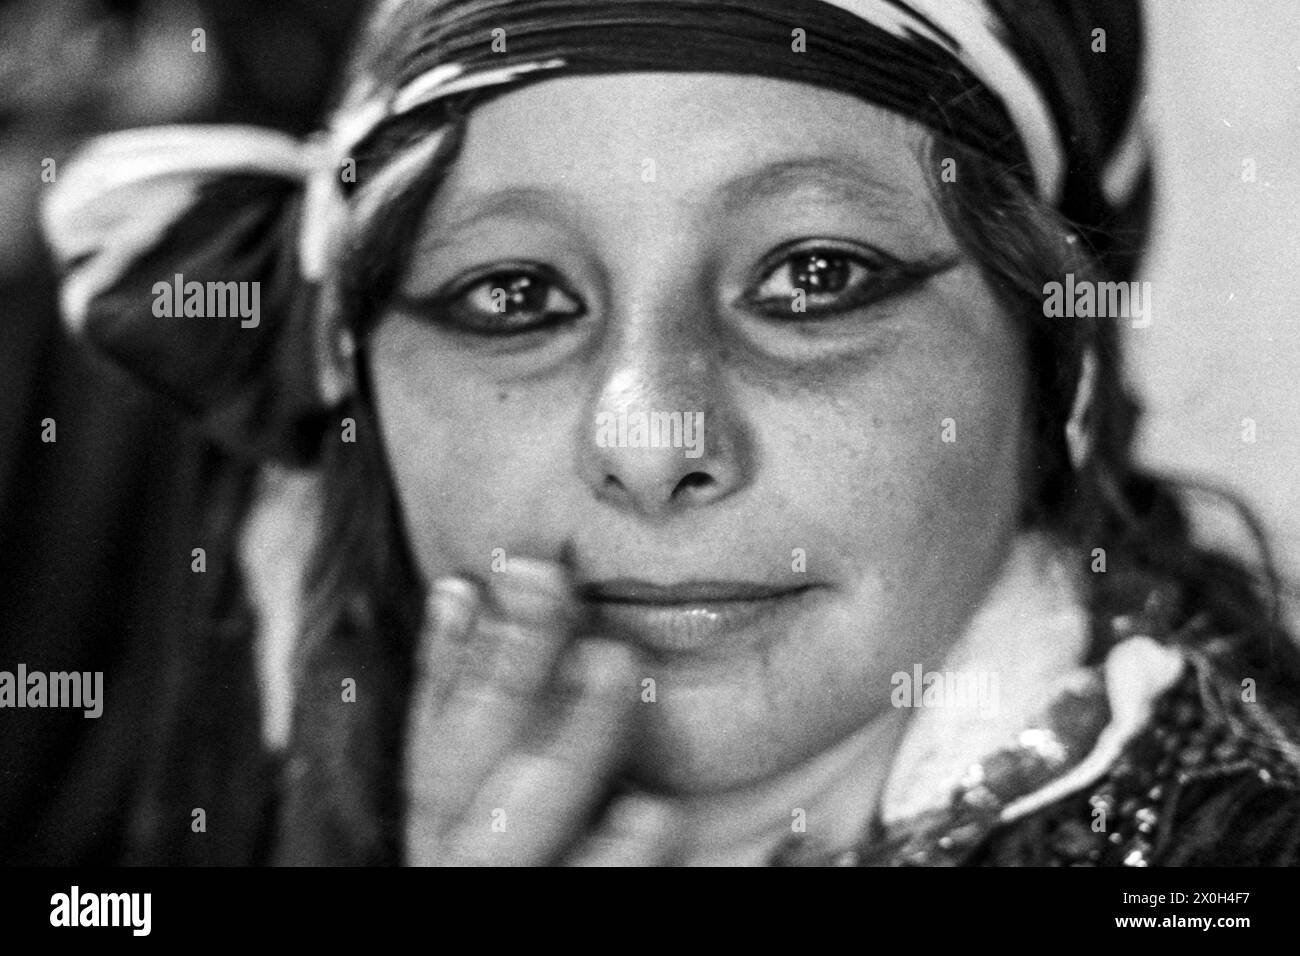 Jeune fille bédouine avec maquillage attendant dans le bazar. [traduction automatique] Banque D'Images